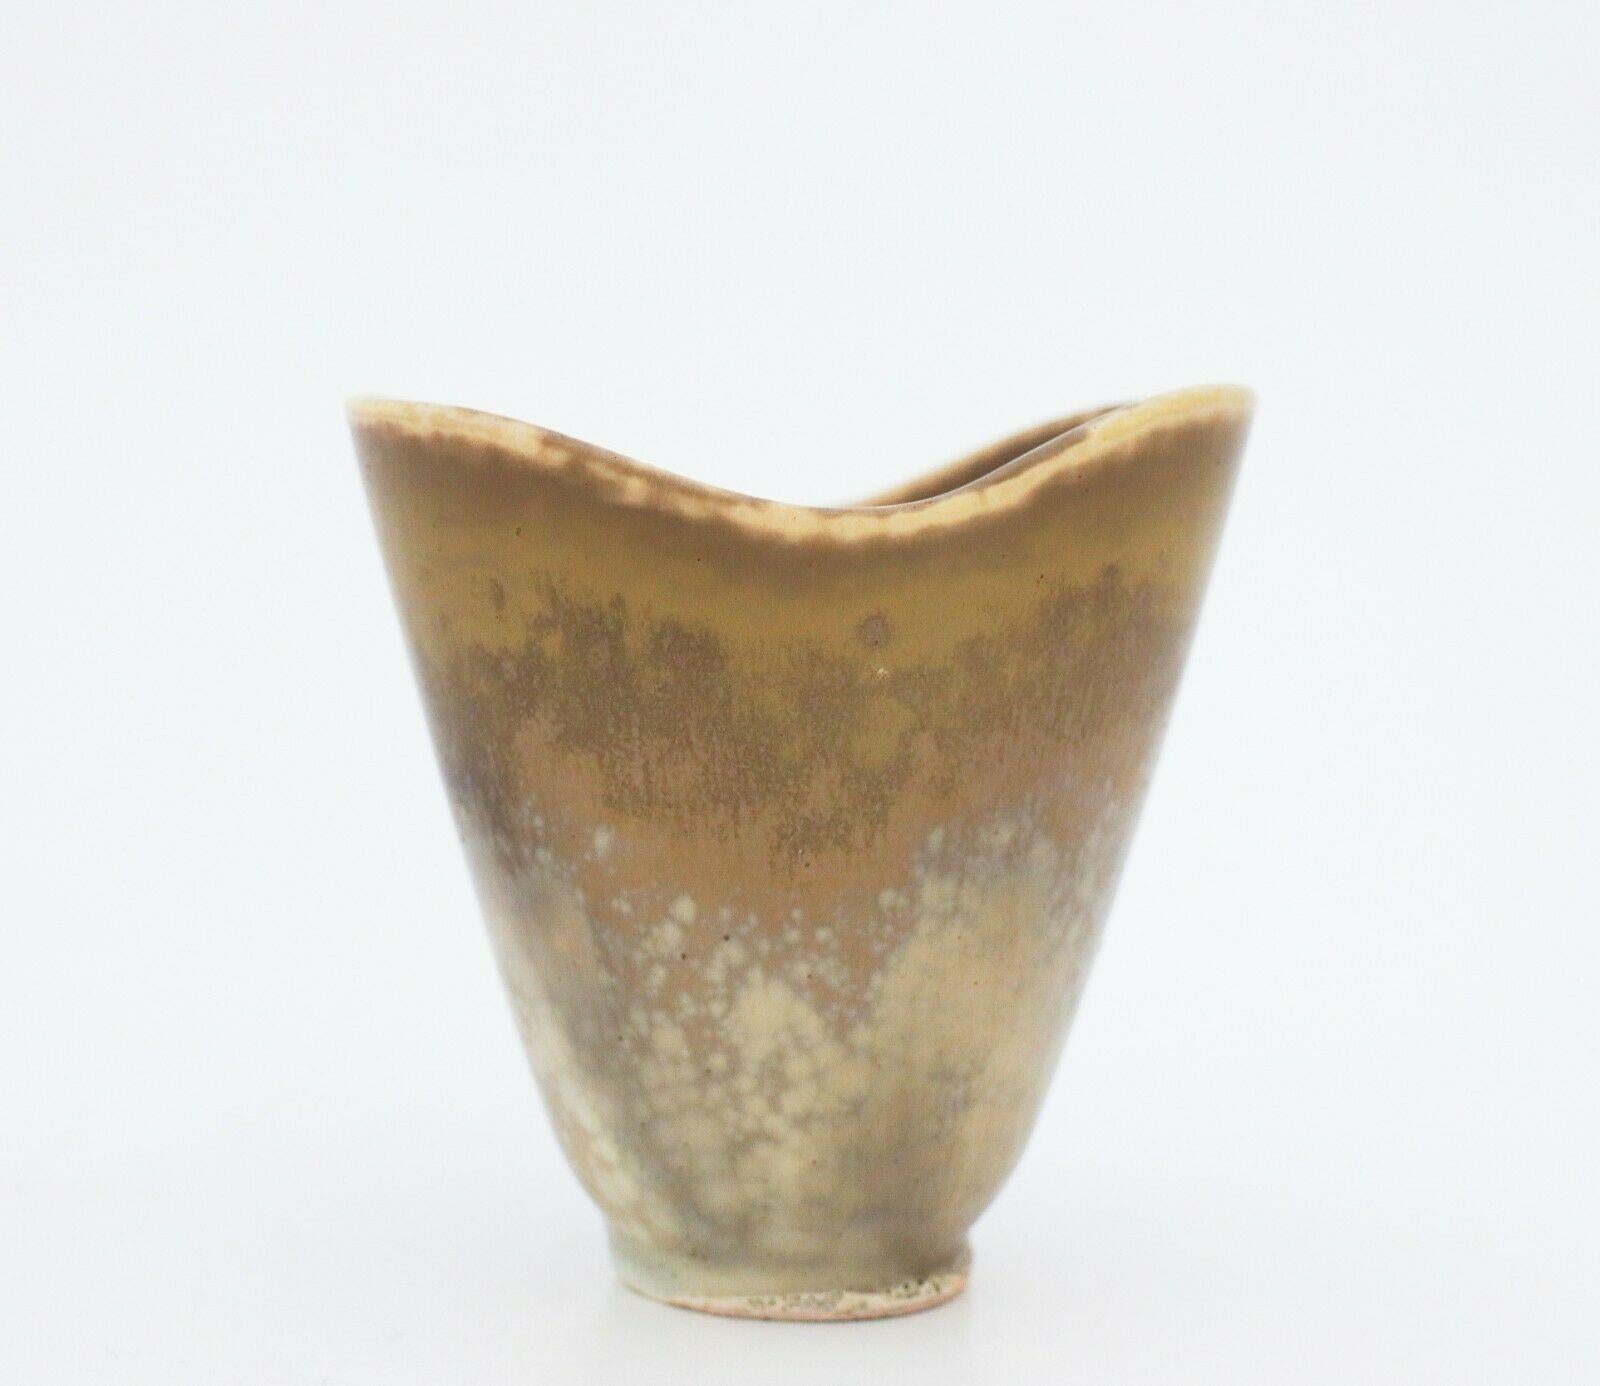 Un vase vintage conçu par Carl-Harry Stålhane à Rörstrand au 20ème siècle, il mesure 10,5 cm de haut et est en très bon état à l'exception de quelques marques dans l'émail provenant de la production, c'est pourquoi il est marqué comme étant de 2ème